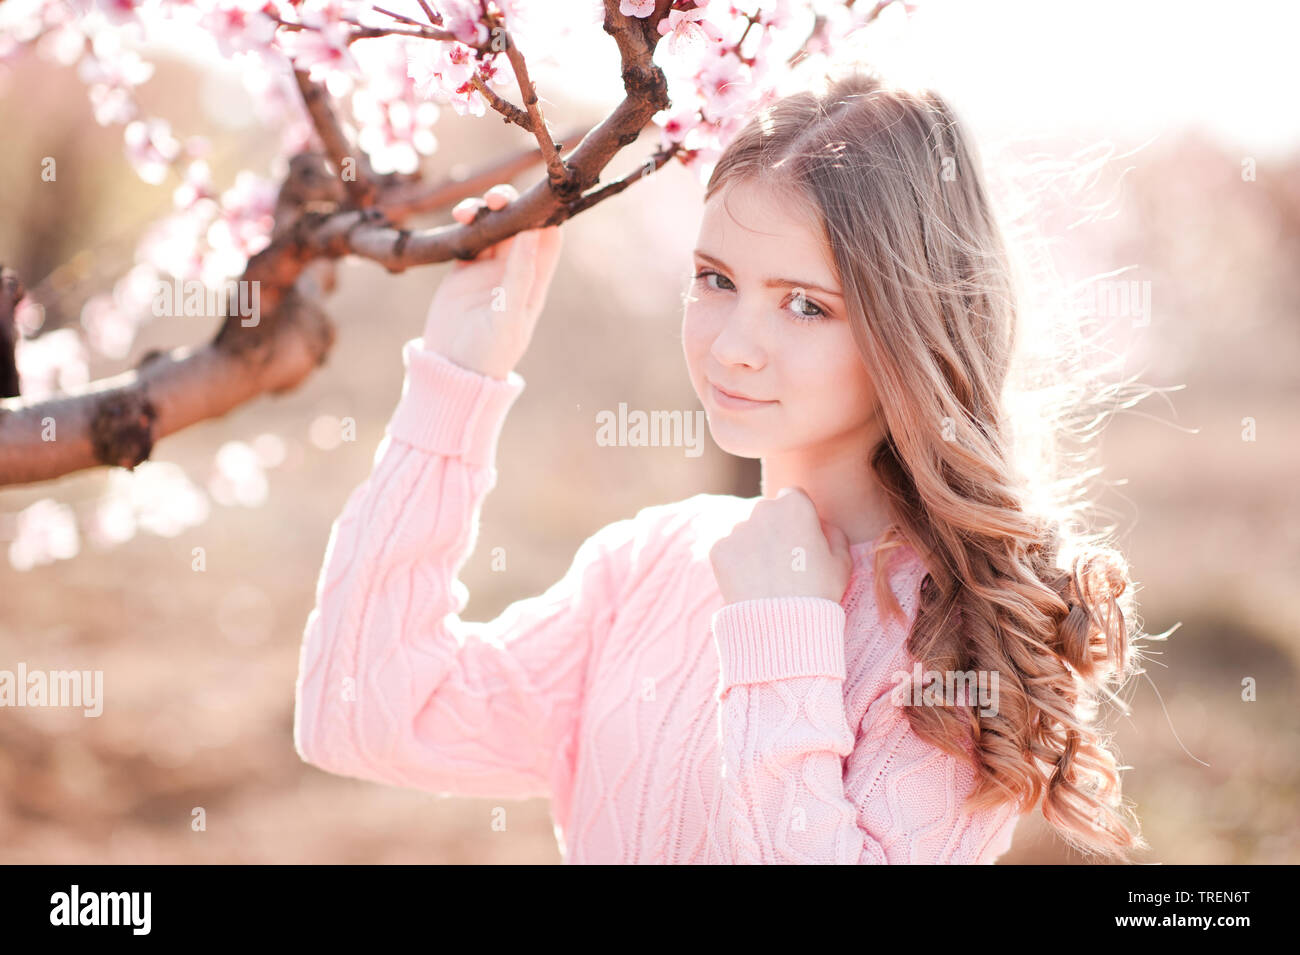 Schönes blondes junges Mädchen 14-16 Jahre alten Holding pfirsich Baum im Garten. Posing im Freien. Gestrickte Pullover tragen. Weg schauen. Stockfoto